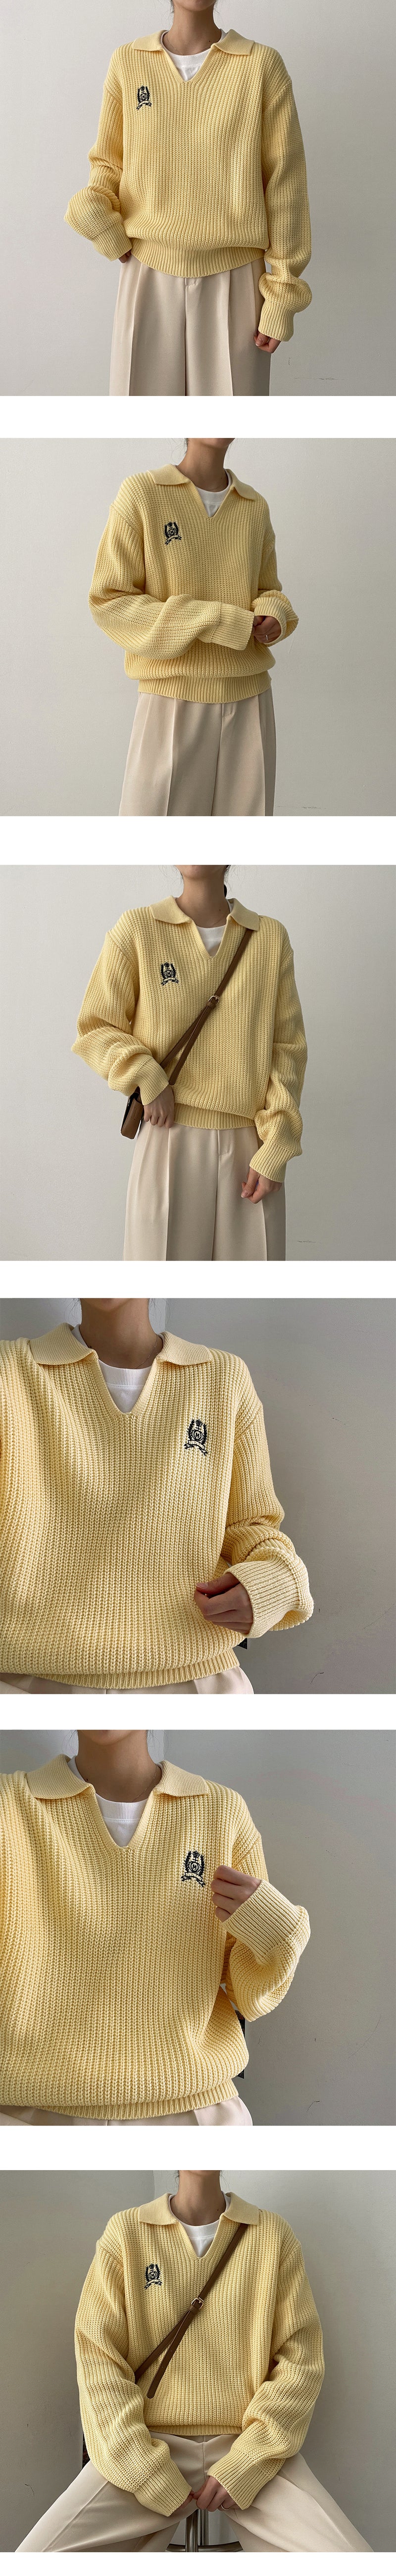 ベジークラウンカラーニットウェア / Veggie Crown Collar Knitwear